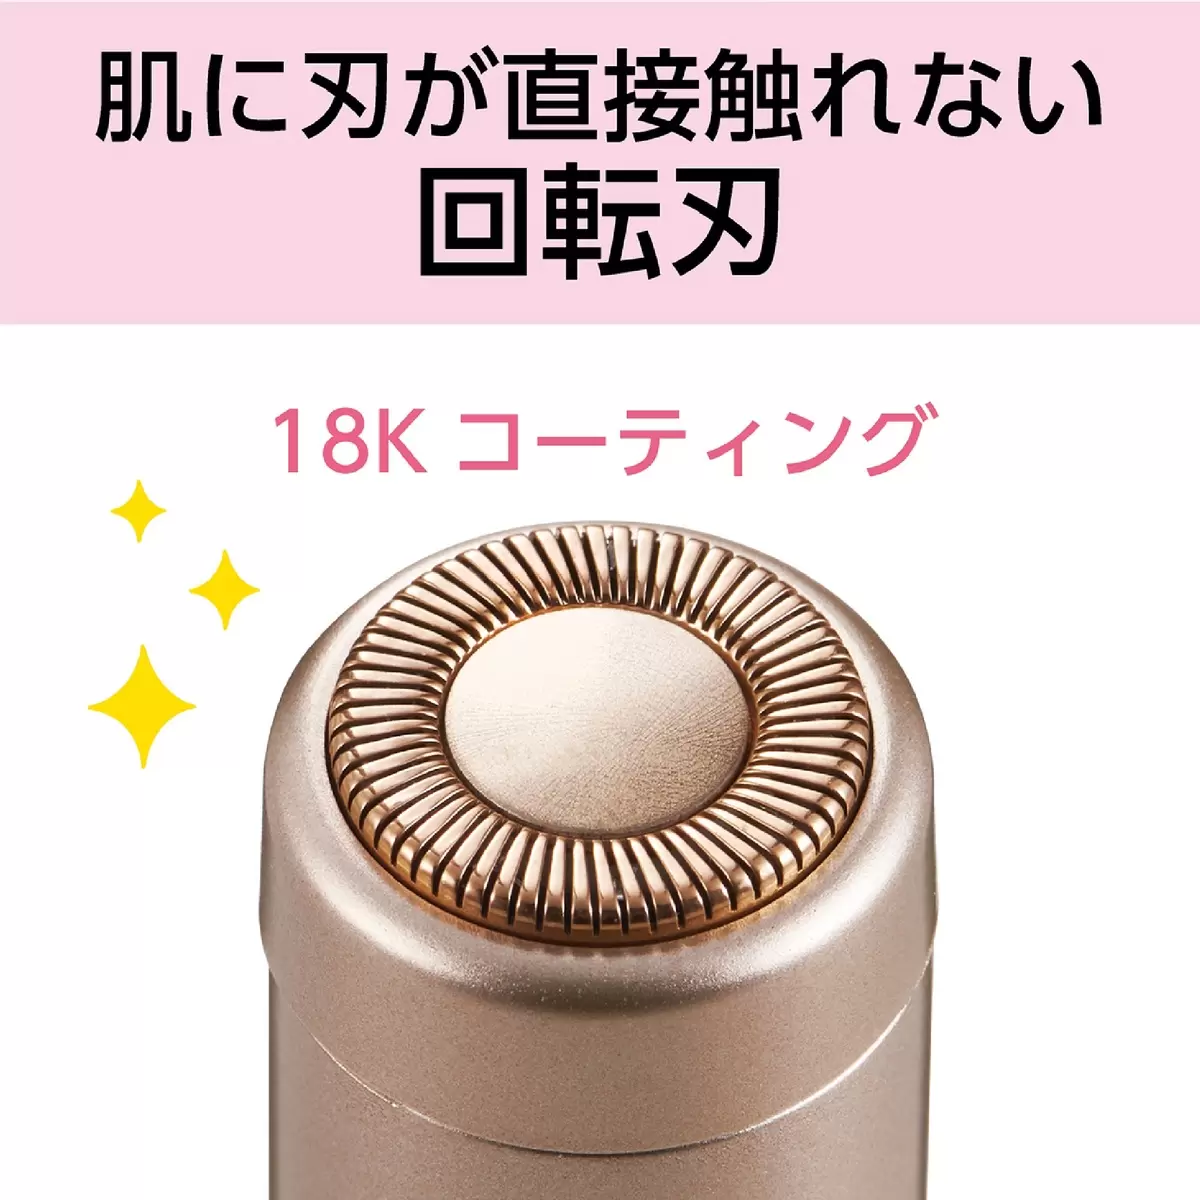 コイズミ フェイスシェーバー KLC0730 | Costco Japan